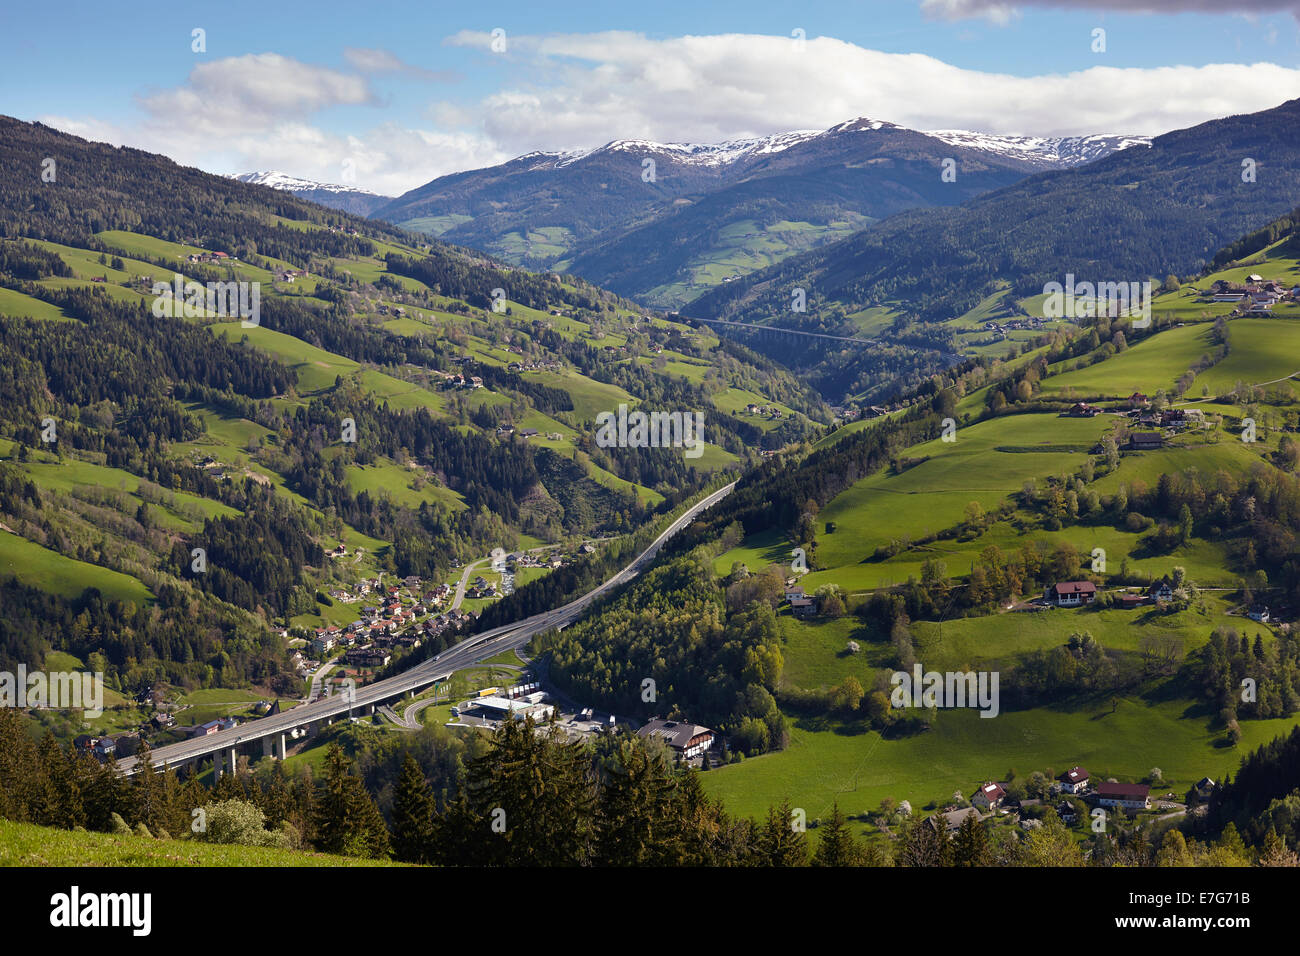 A10 Tauern Autobahn motorway, Liesertal valley, at Eisentratten, Carinthia, Austria Stock Photo